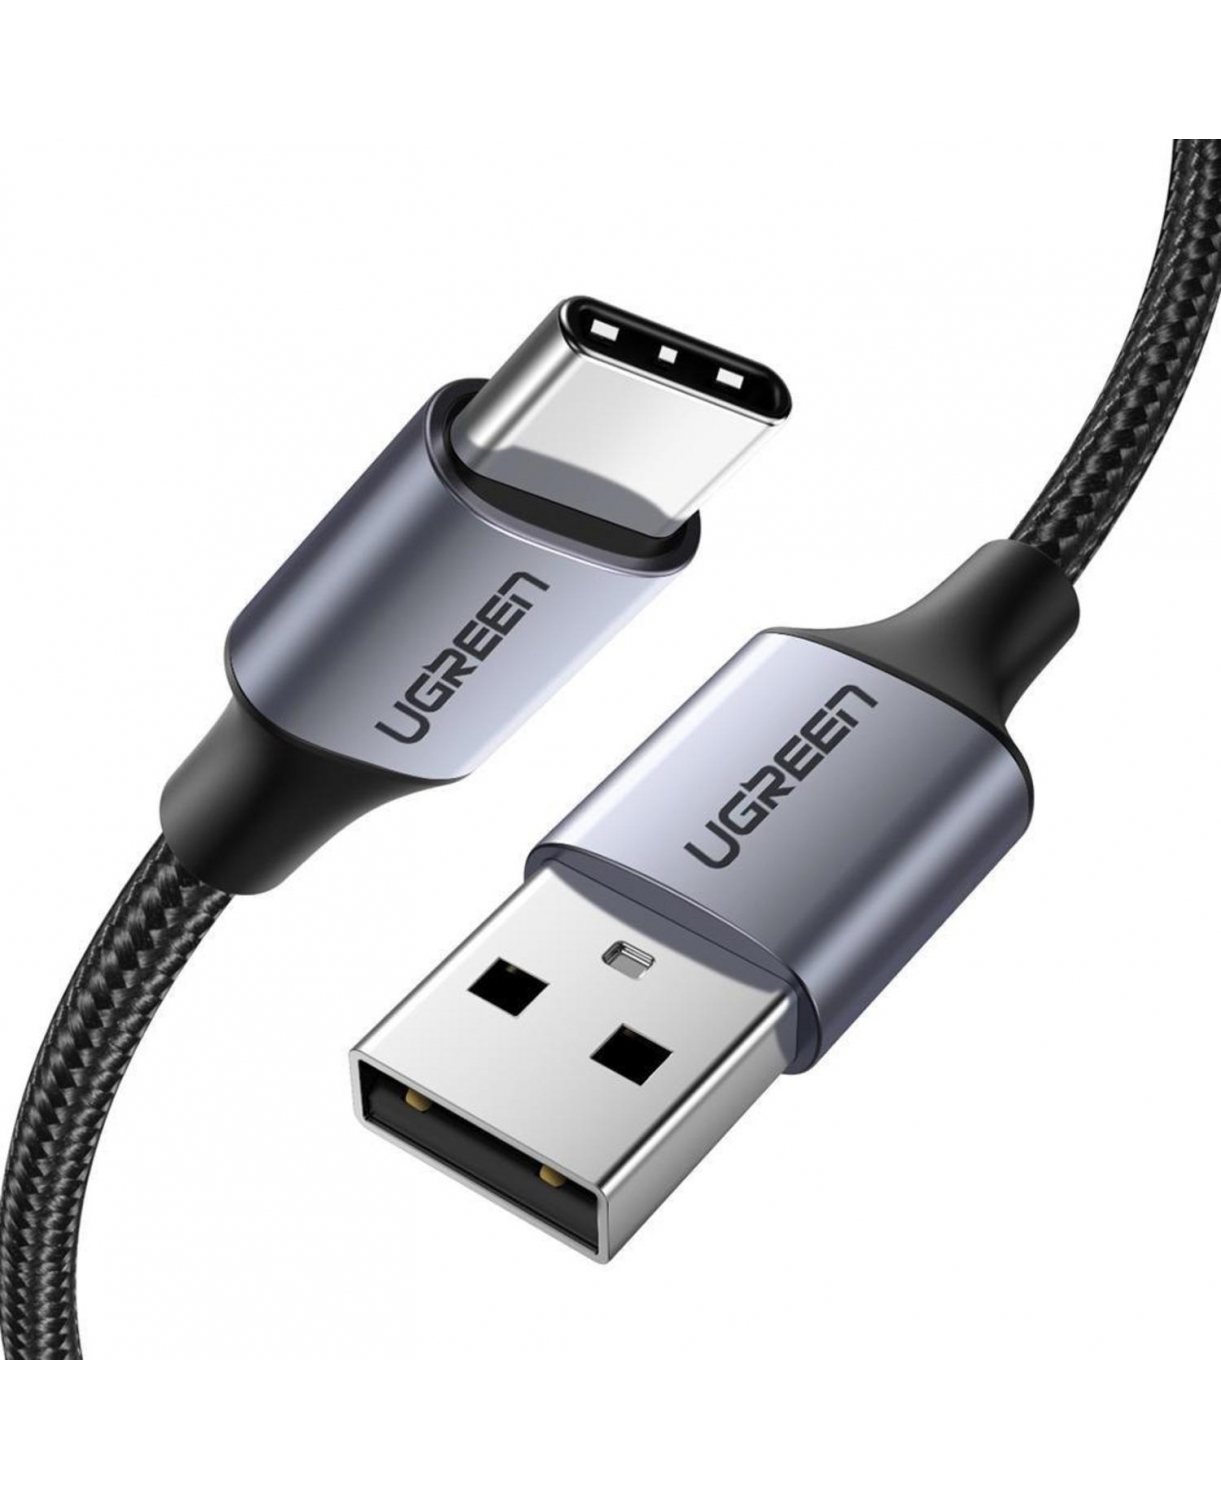 CABO USB-C PARA USB-A 2.0 PT 1M